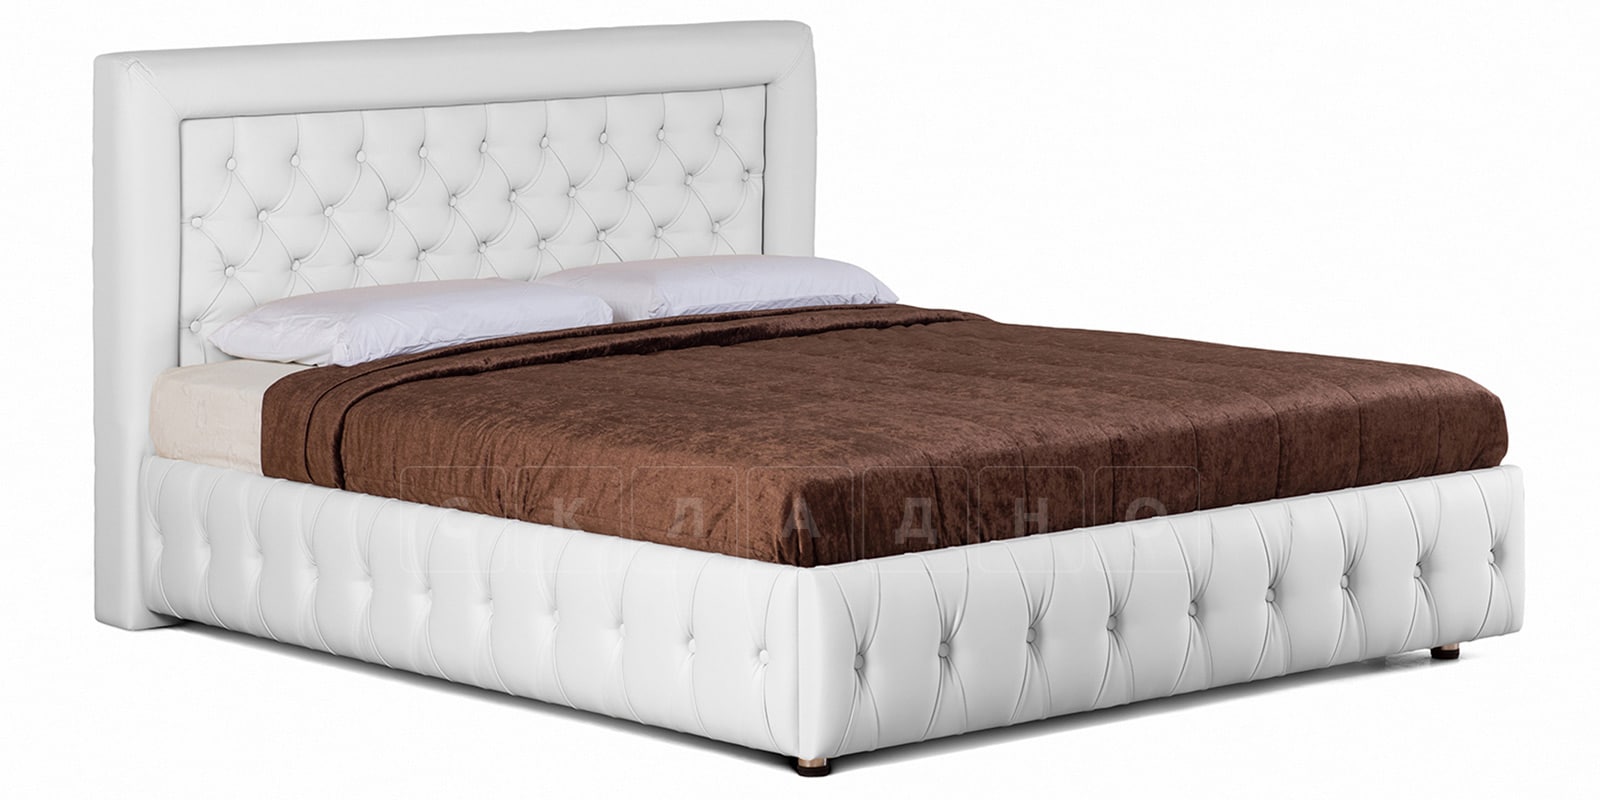 Мягкая кровать Малибу 160 см экокожа белого цвета вариант 7 фото 1 | интернет-магазин Складно